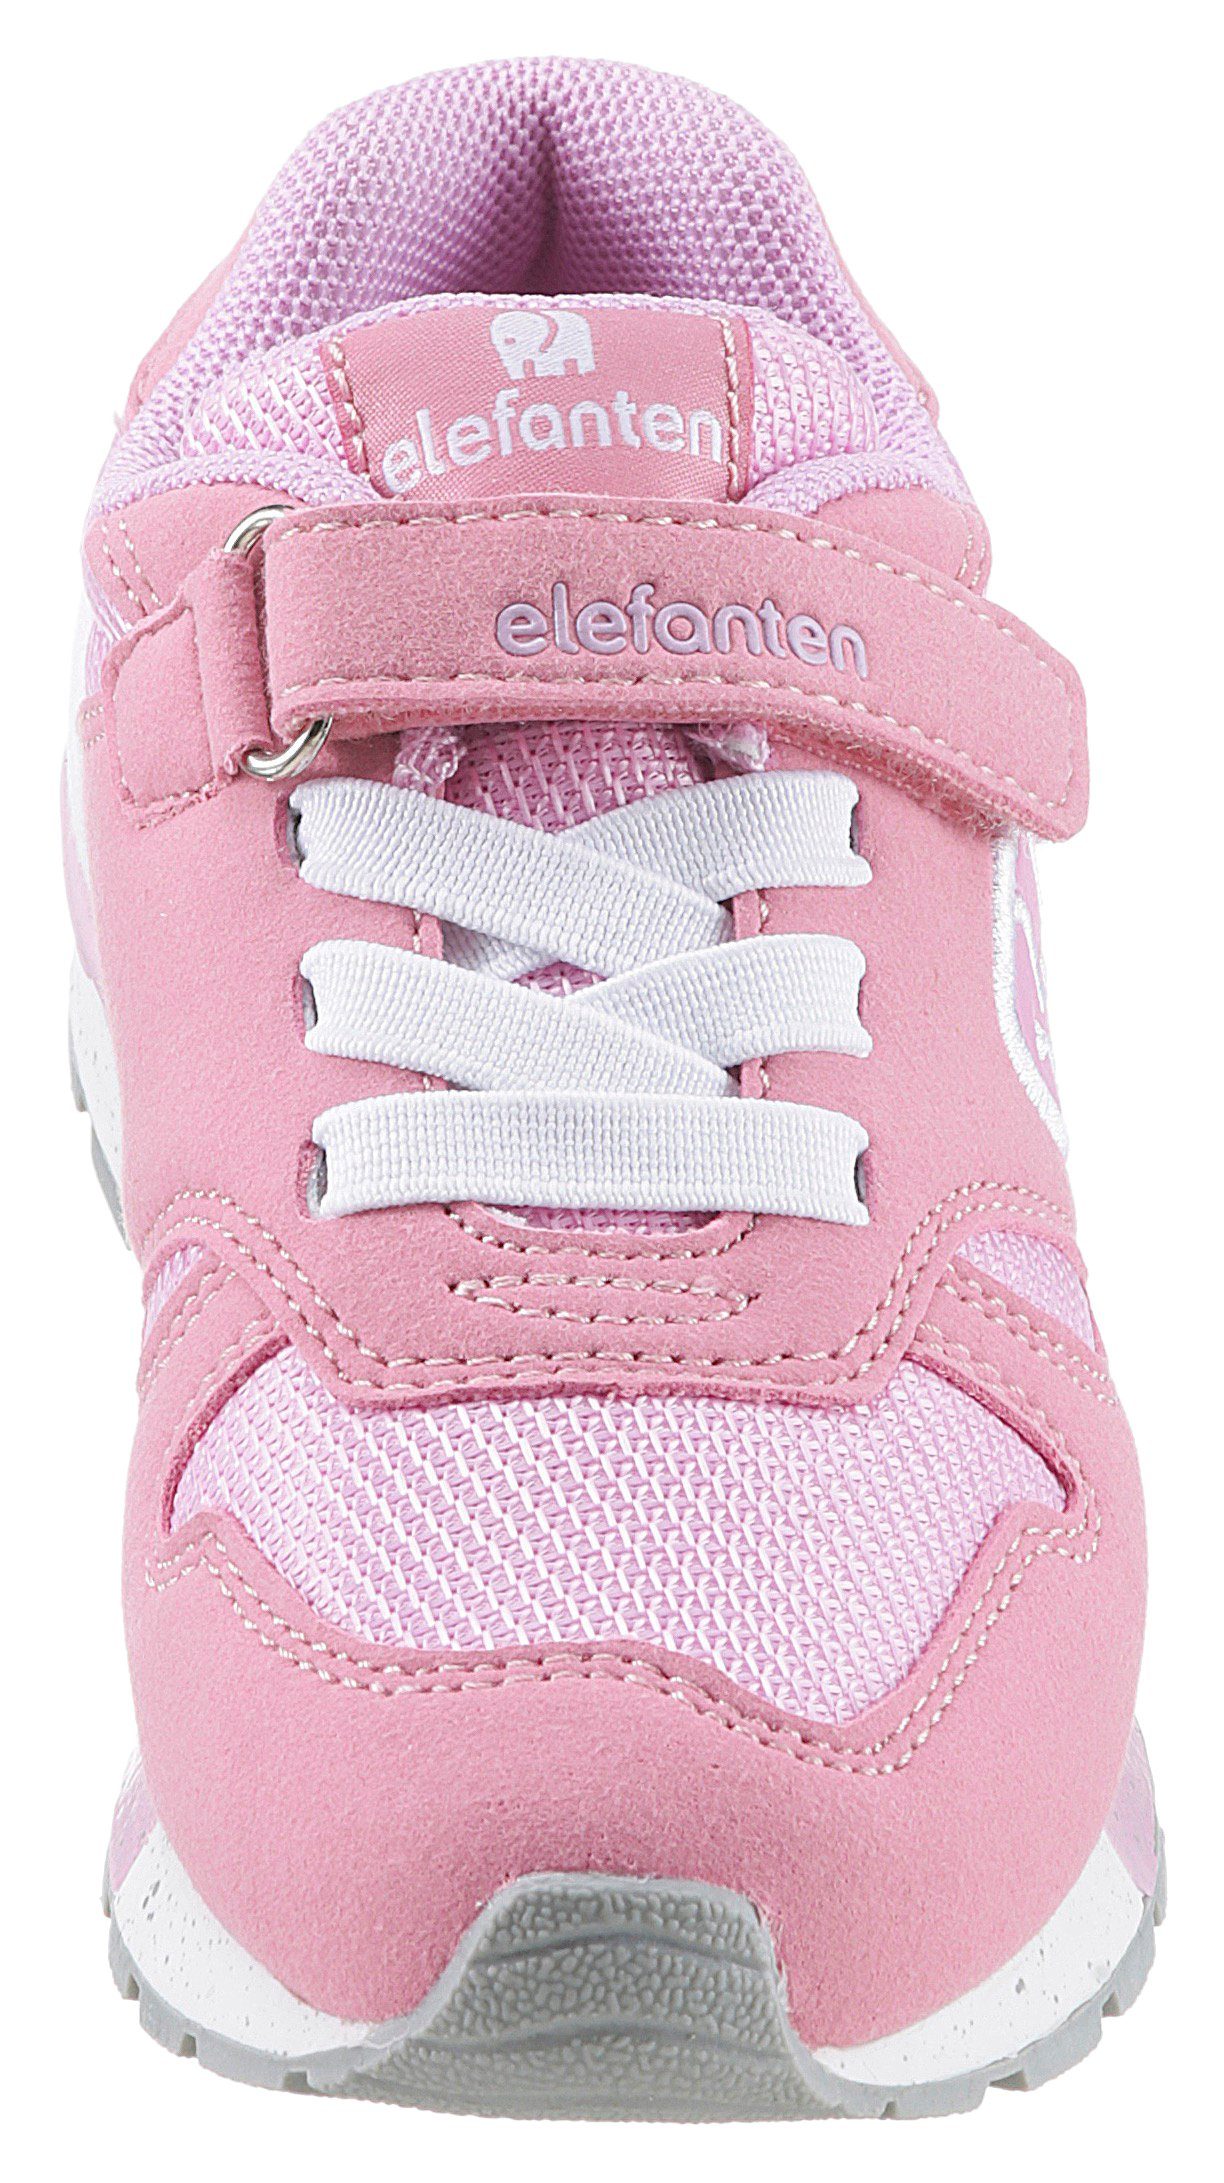 Foam Sneaker ELEFANTEN Memory Hoppy weichem pink-flieder mit WMS: Weit